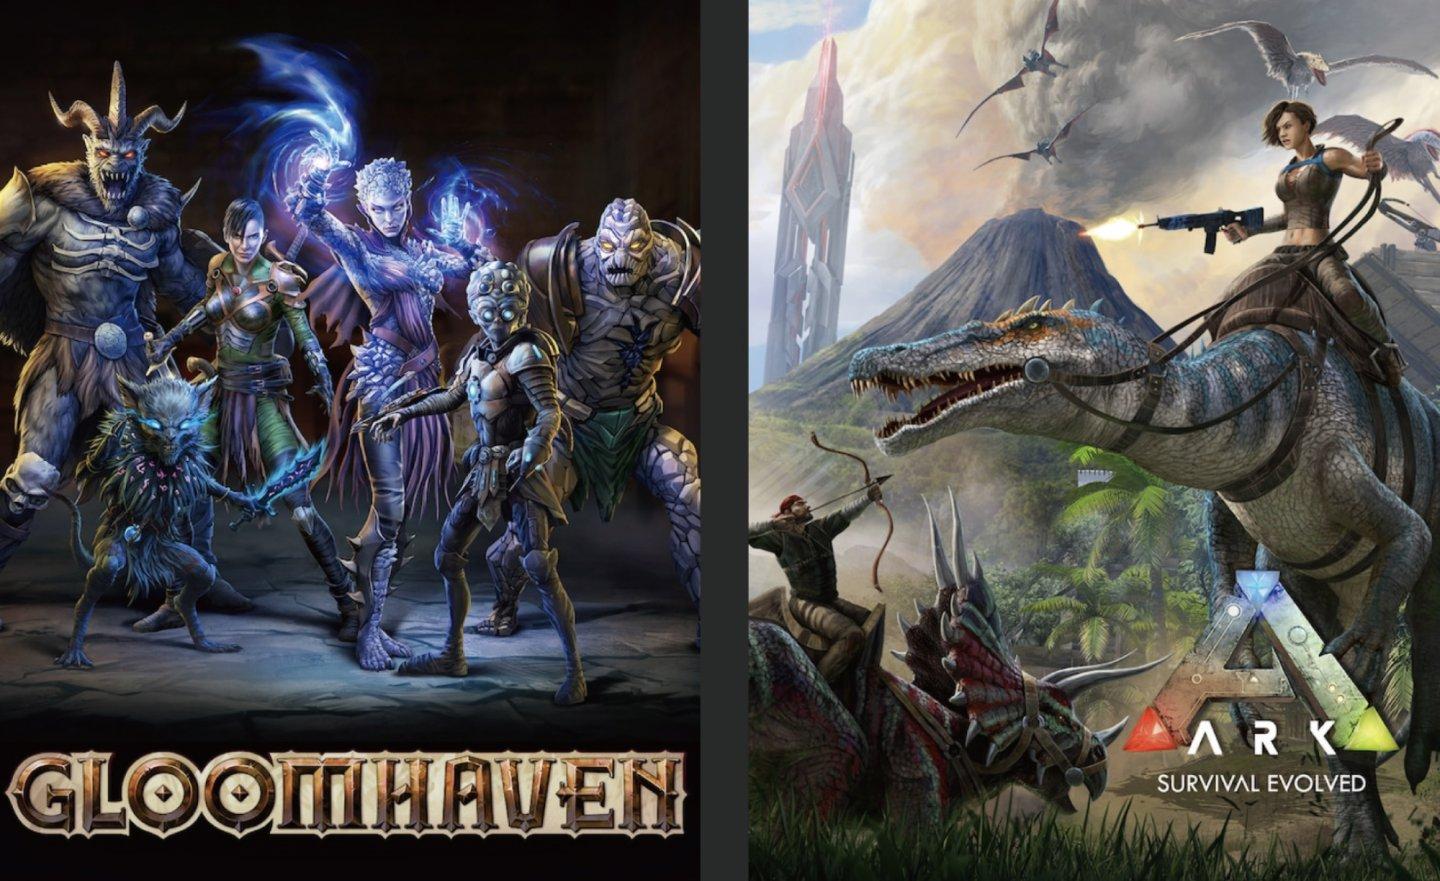 【限時免費】《Gloomhaven》、《ARK: Survival Evolved 方舟：生存進化》兩款遊戲放送中，快搶在 2022 年 9 月 29 日 23:00 前領取